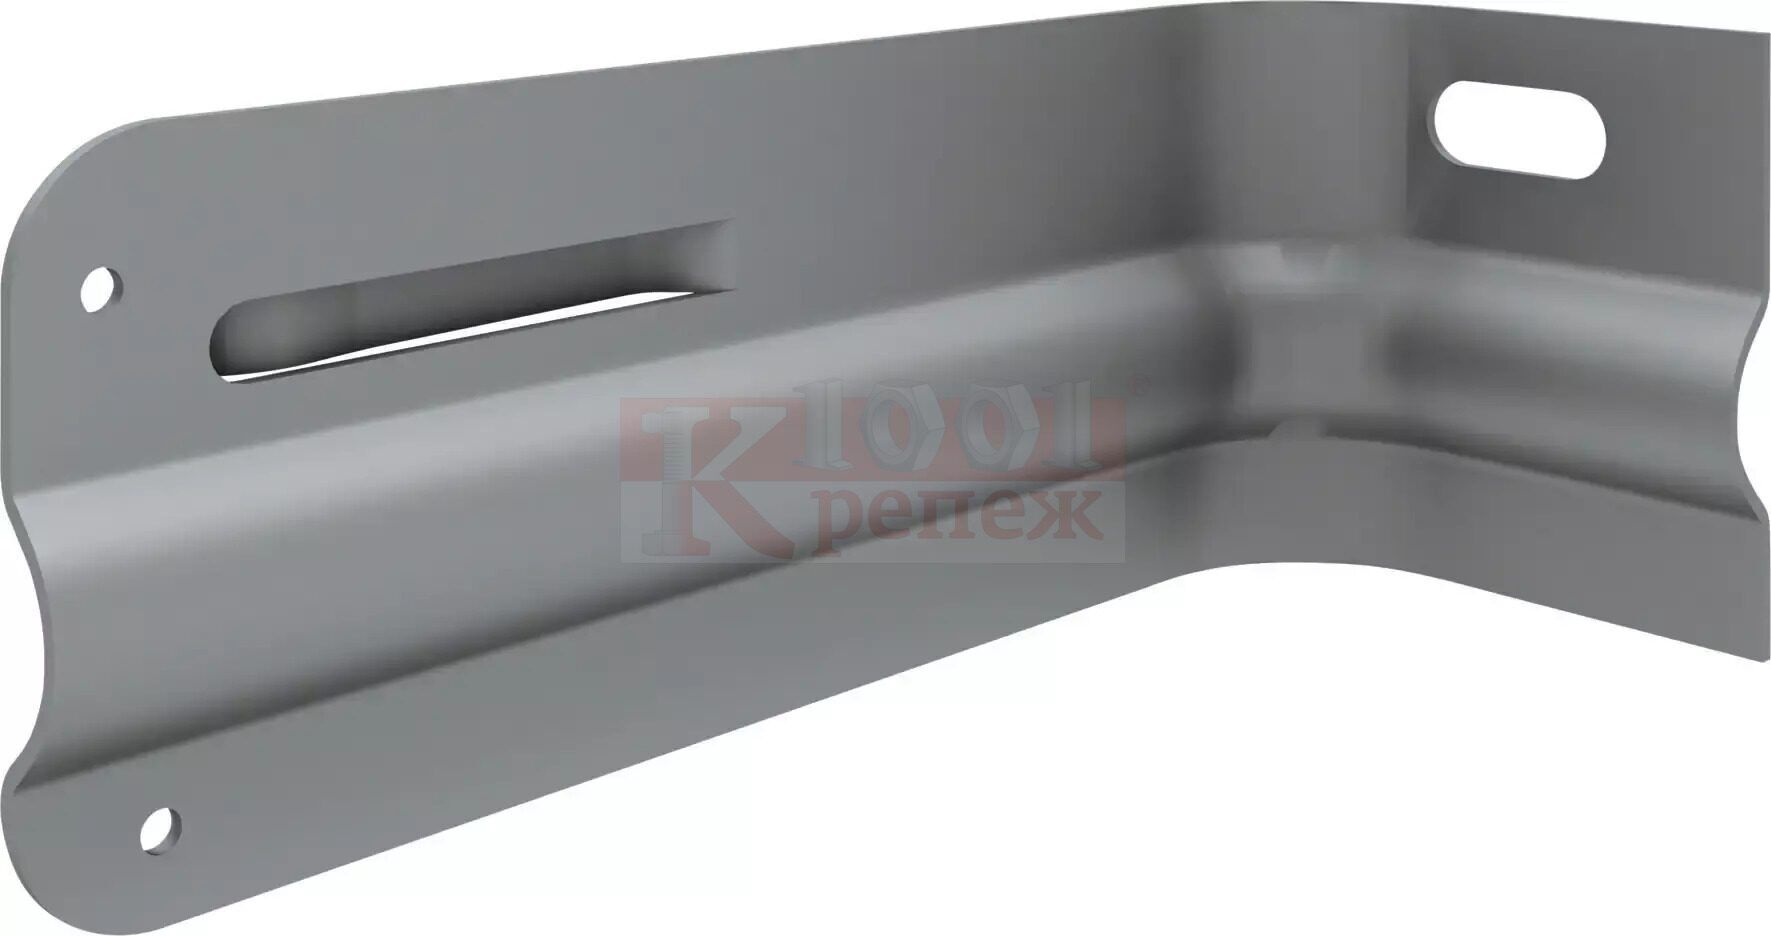 MFT-GS S Кронштейн HILTI с полимерным покрытием для фасадных систем оц. сталь, 72x75x190 мм